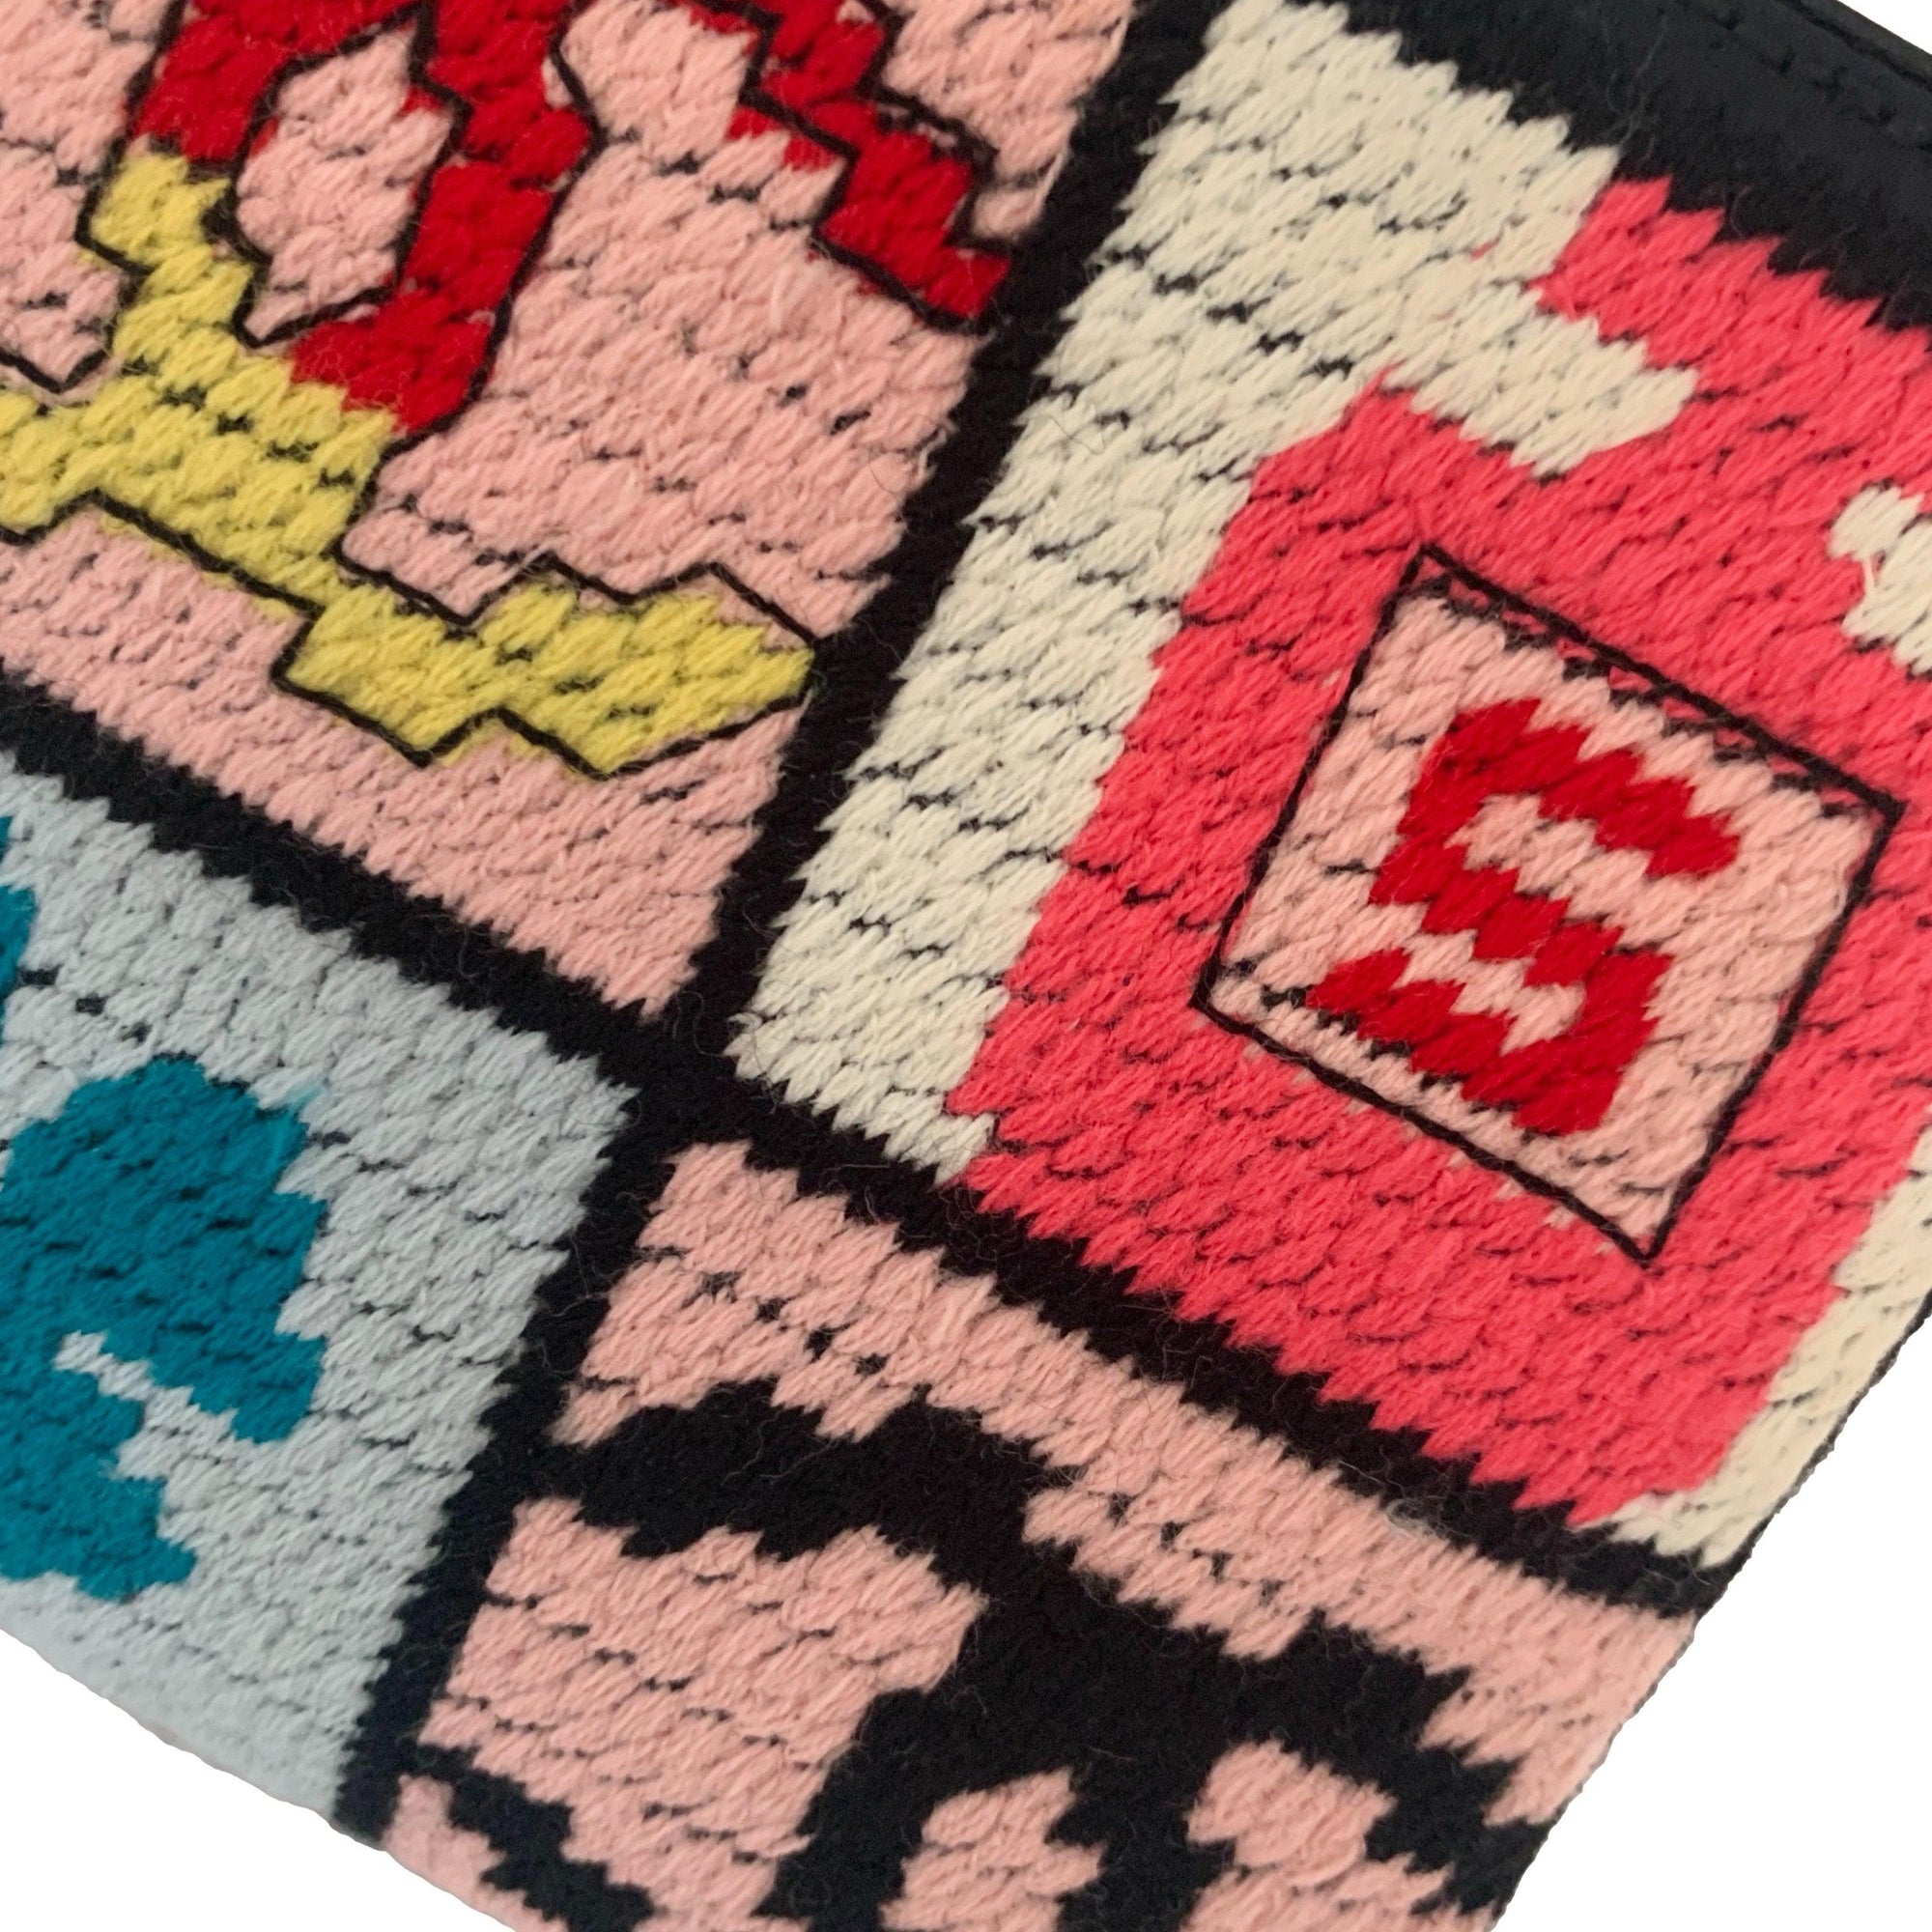 Chanel Multicolor Small Chain Shoulder Bag - Handbags